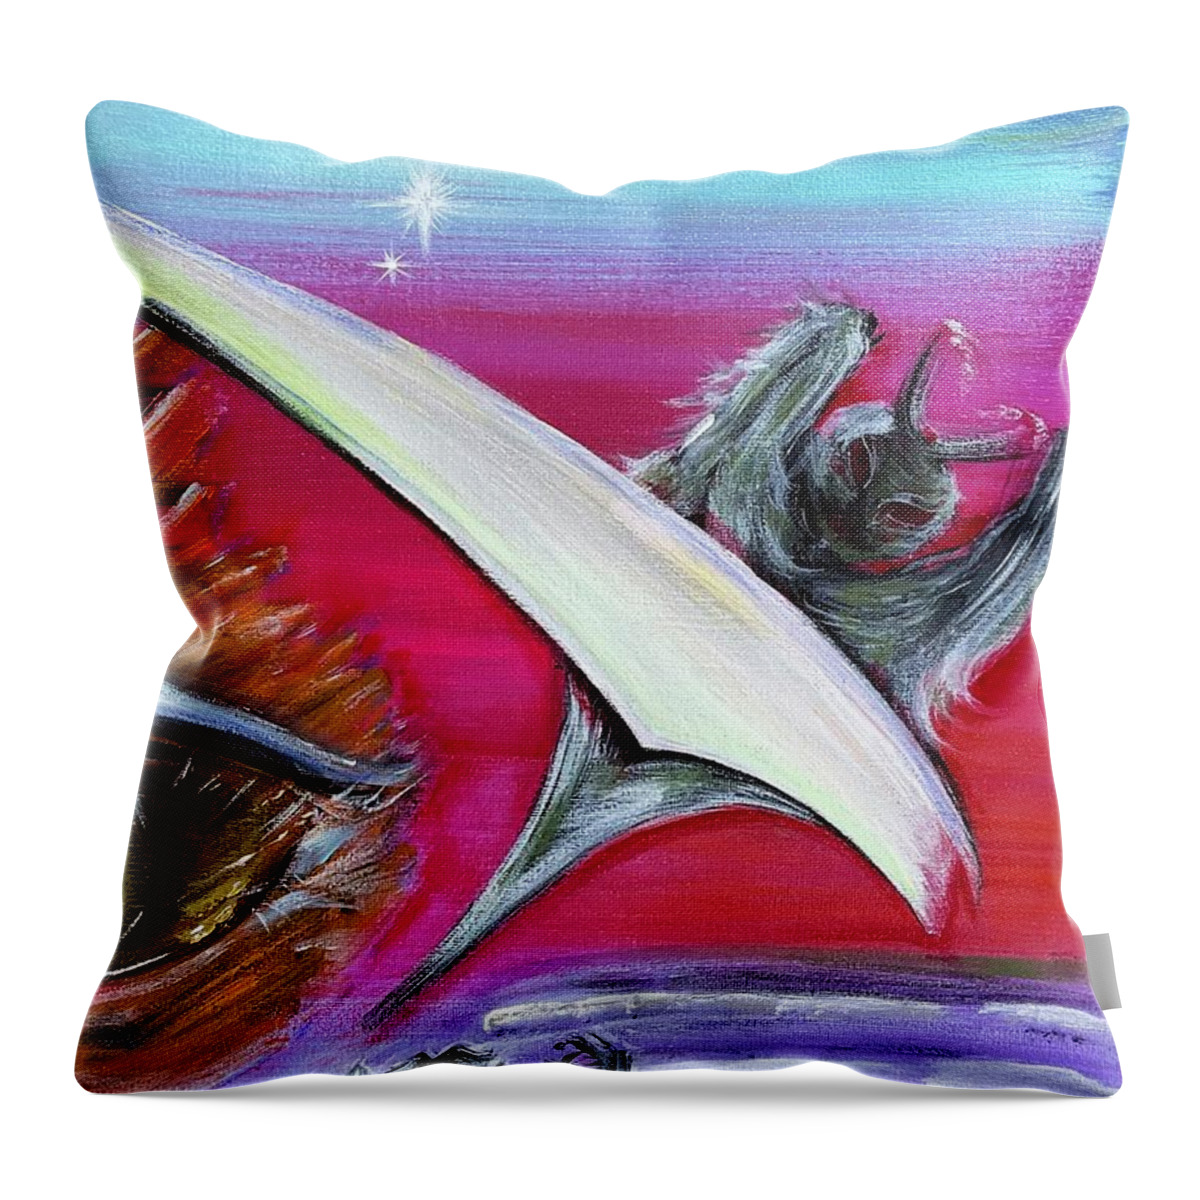 Angel Throw Pillow featuring the painting Taras Diptych 1 of 2 Fallen Angel Lucifer by Tara Dunbar